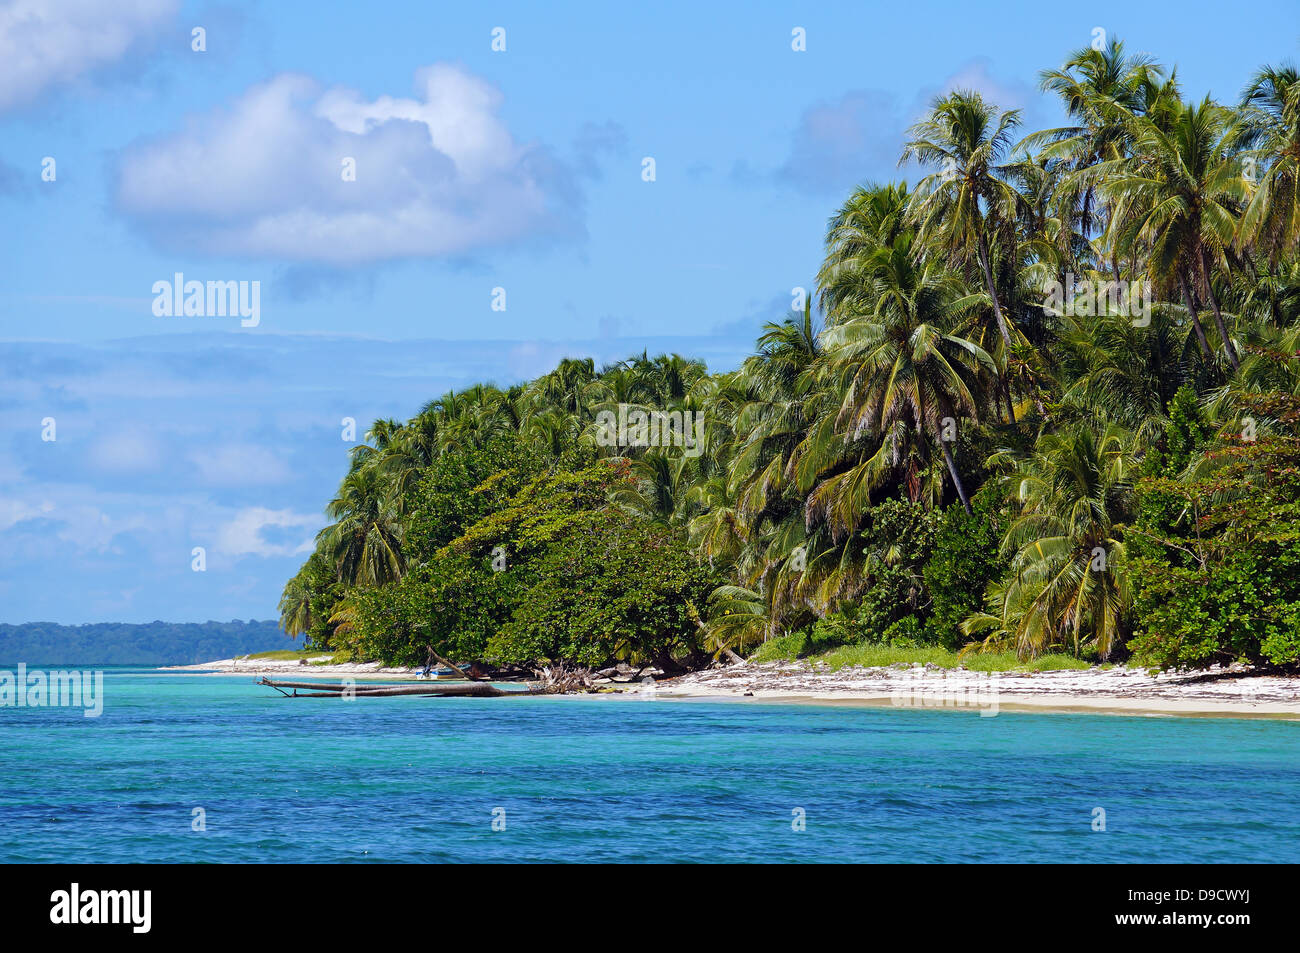 Plage exotique avec une végétation dense sur les Zapatillas islands , Bocas del Toro, Panama, la mer des Caraïbes Banque D'Images